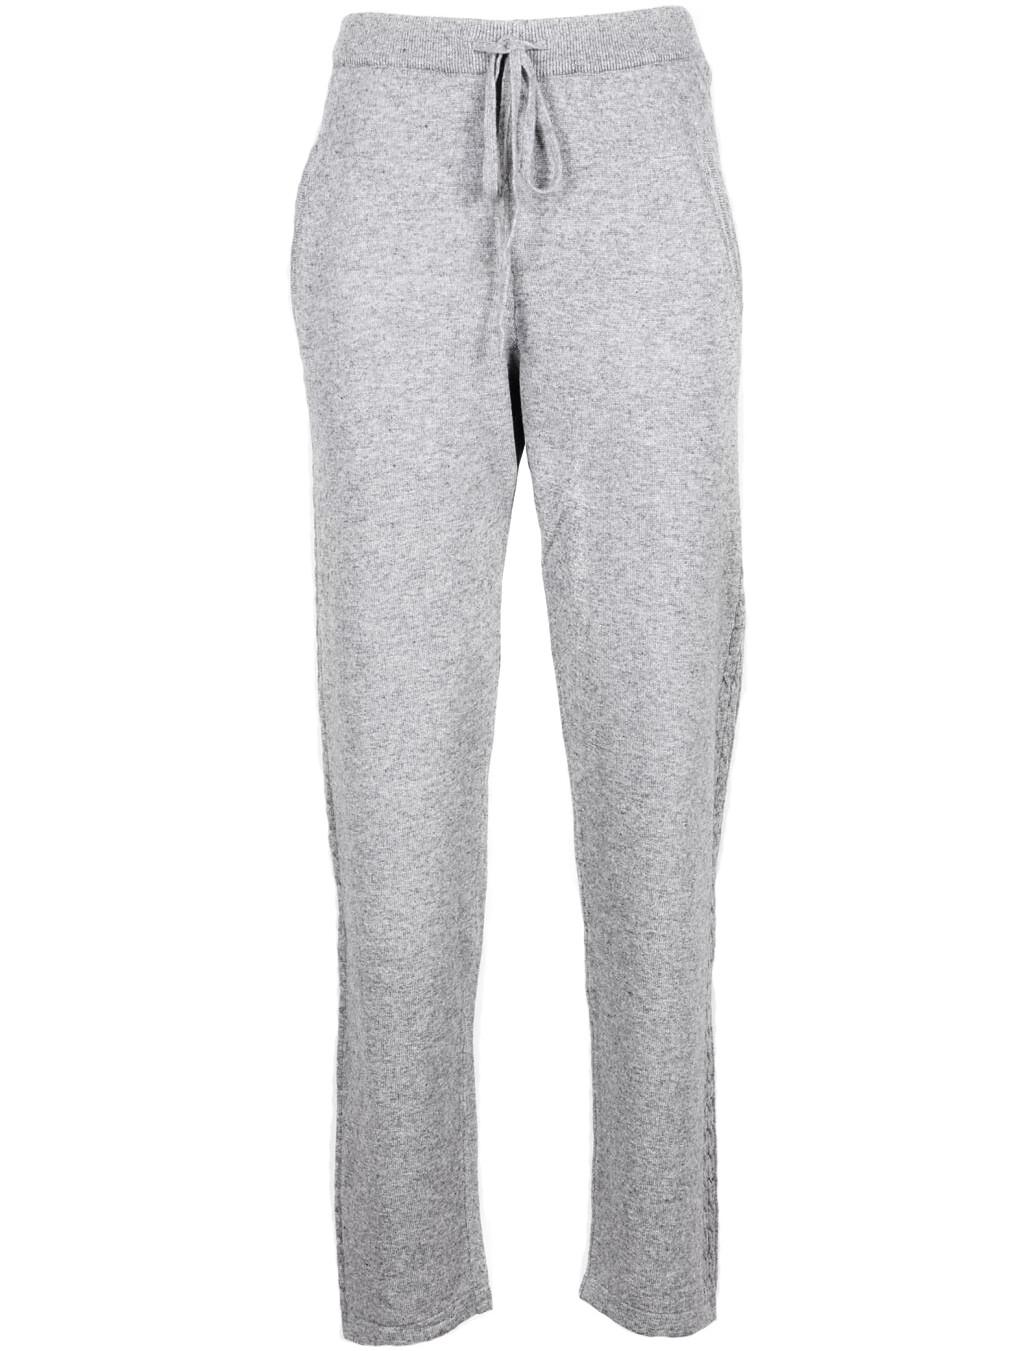  Grey Pants